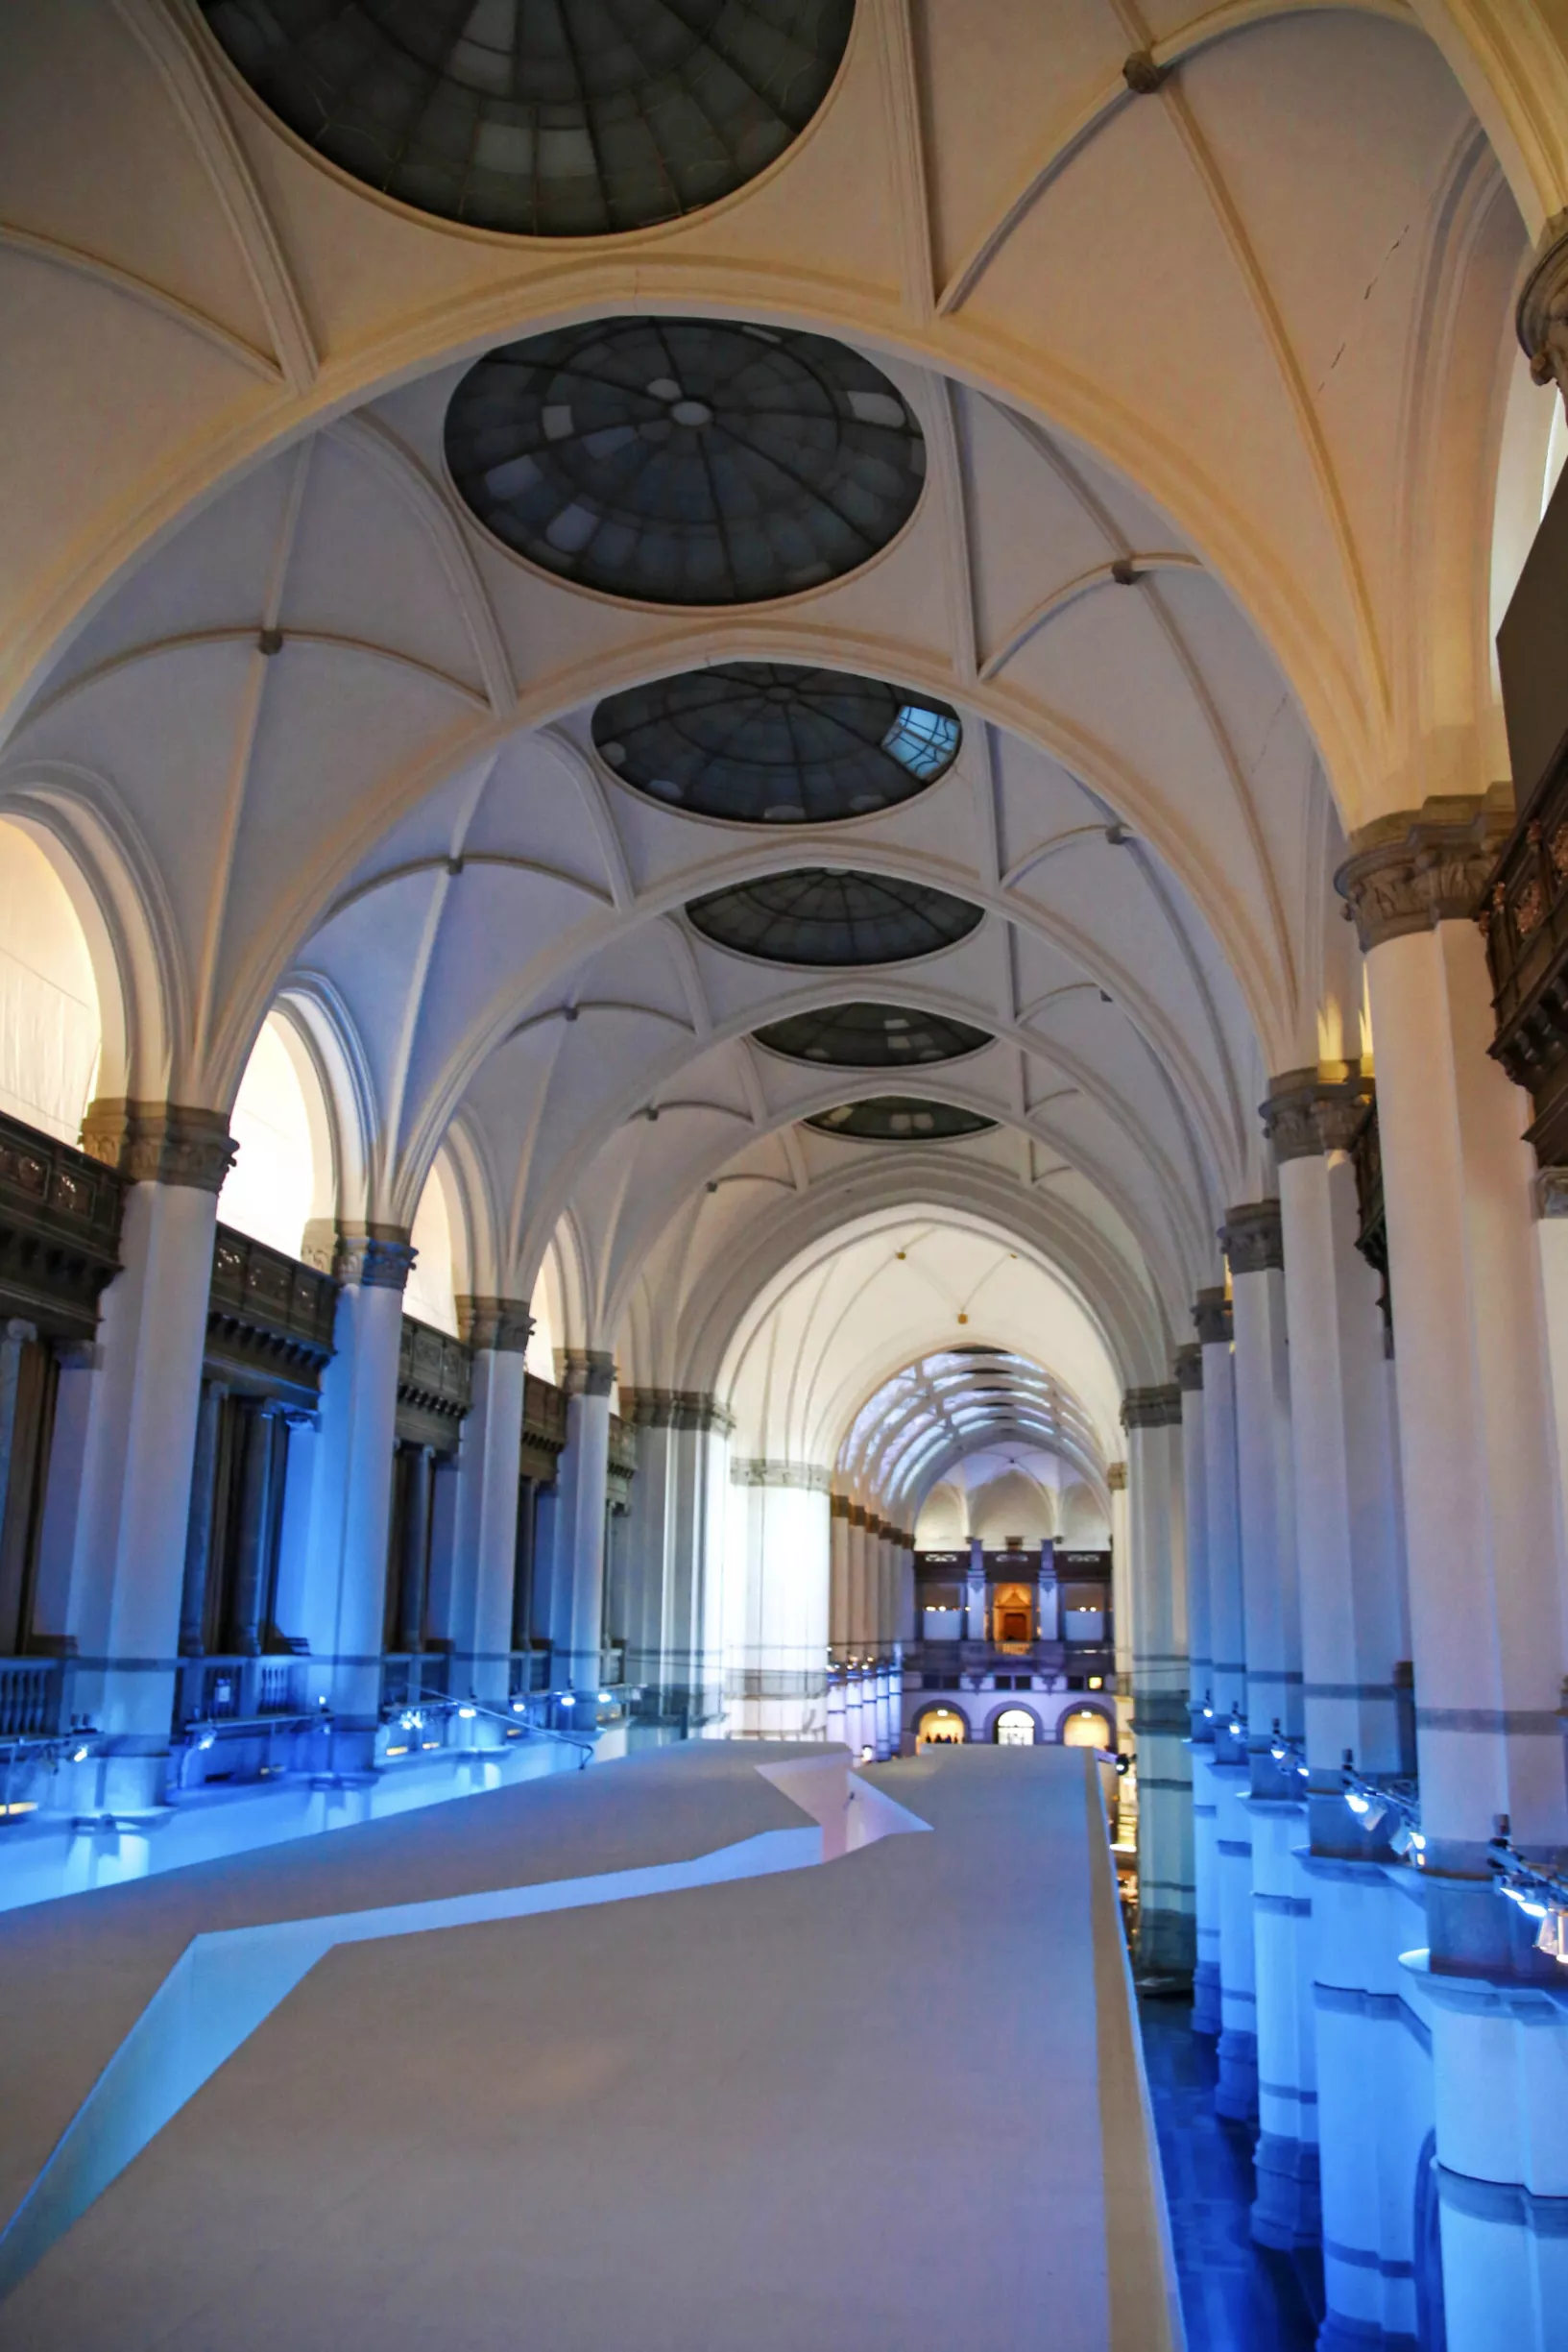  Djurgårdenin Nordiska museet kiinnostaa jo mahtipontisen arkkitehtuurinsa vuoksi.